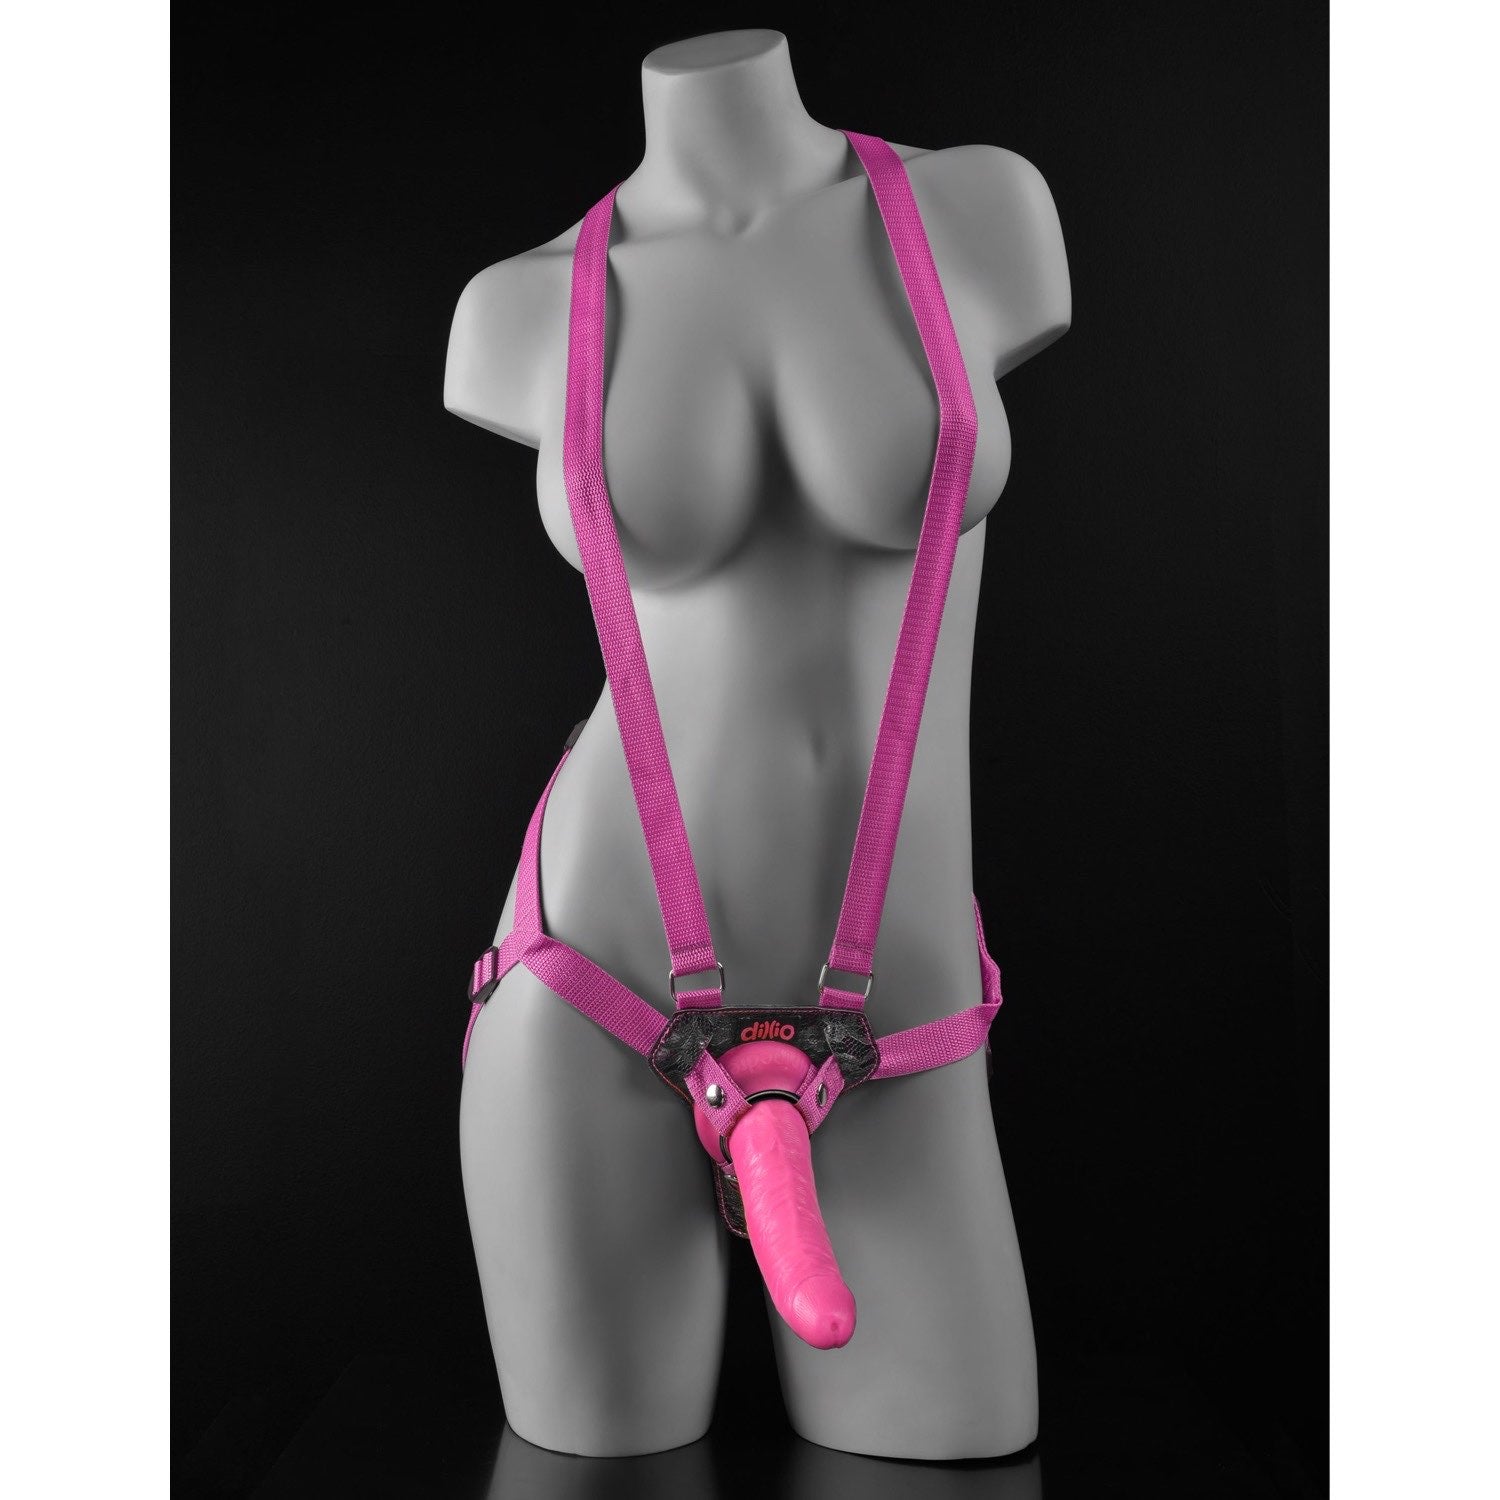 迪利奥 7 英寸绑带式吊带套装 - 粉色 17.8 厘米绑式带吊带 by Pipedream